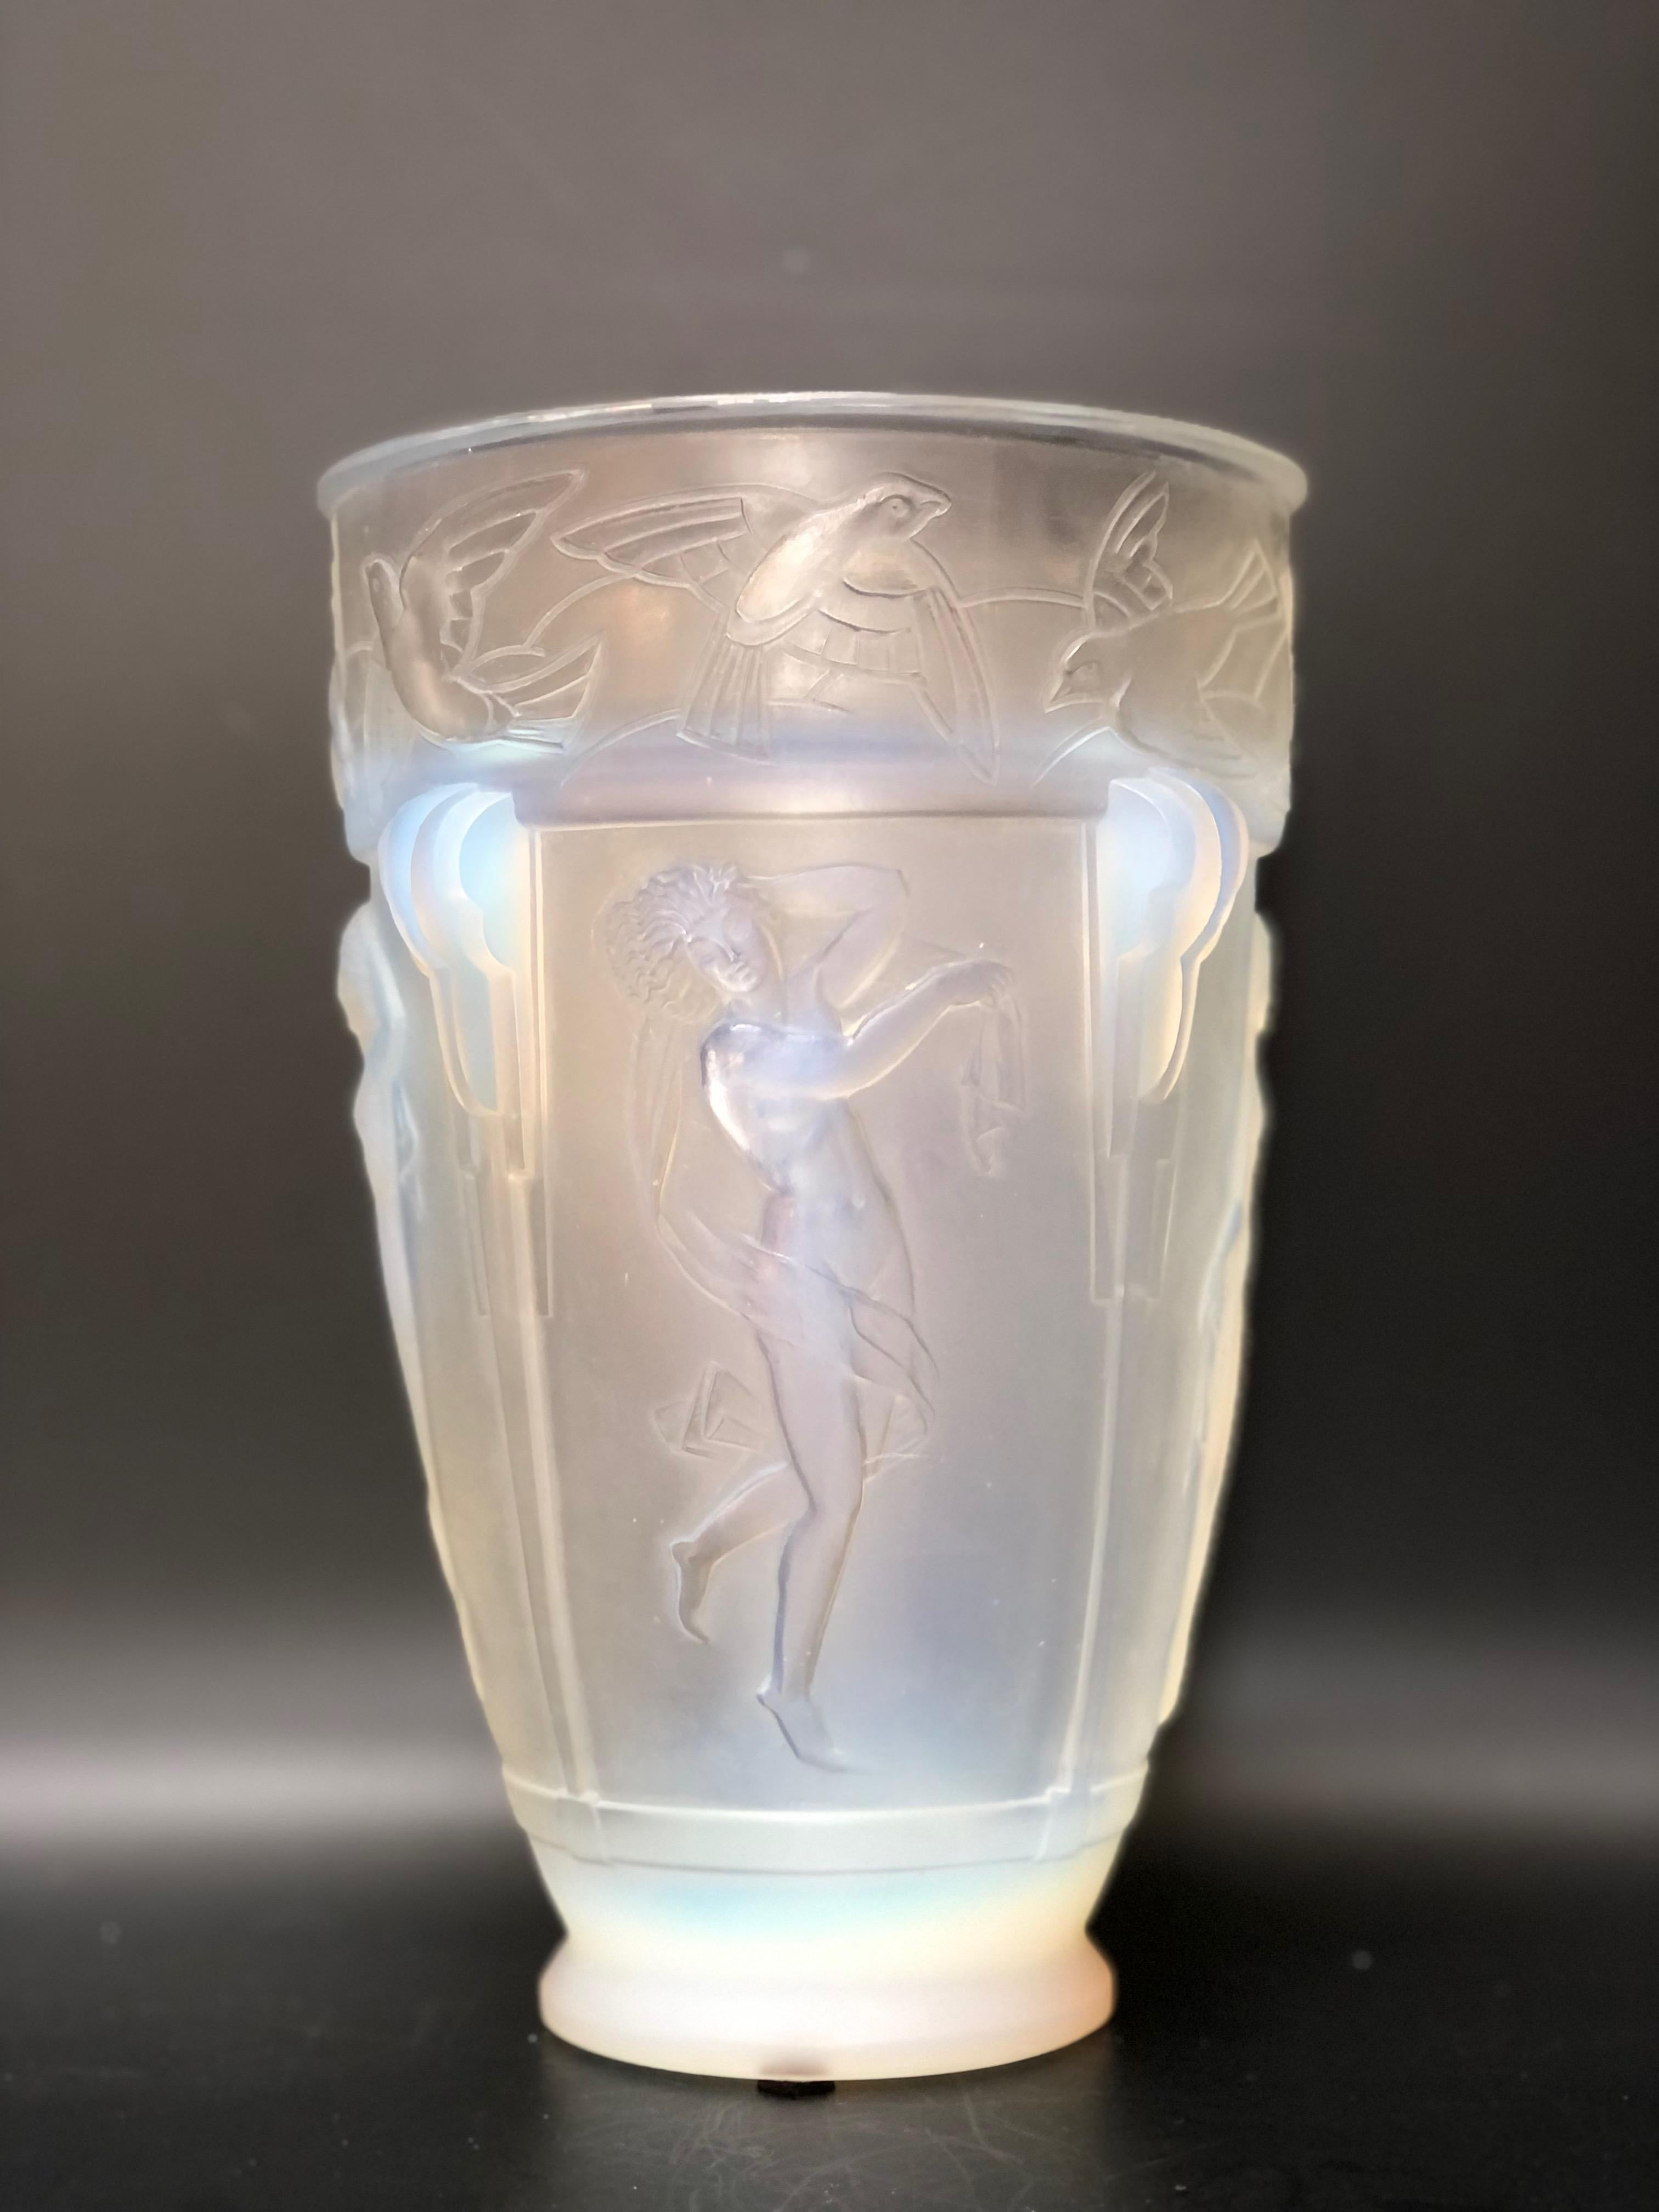 Sabino Art Deco Vase um 1930 aus opalisierendem Pressglas. 
Friesdekoration mit tanzender Frau und Vögeln.
In perfektem Zustand.
Höhe: 22,8 cm 
Durchmesser: 15 cm

MARIUS-ERNEST SABINO, DER BILDHAUER WURDE MEISTER DER GLASHERSTELLUNG DES ART